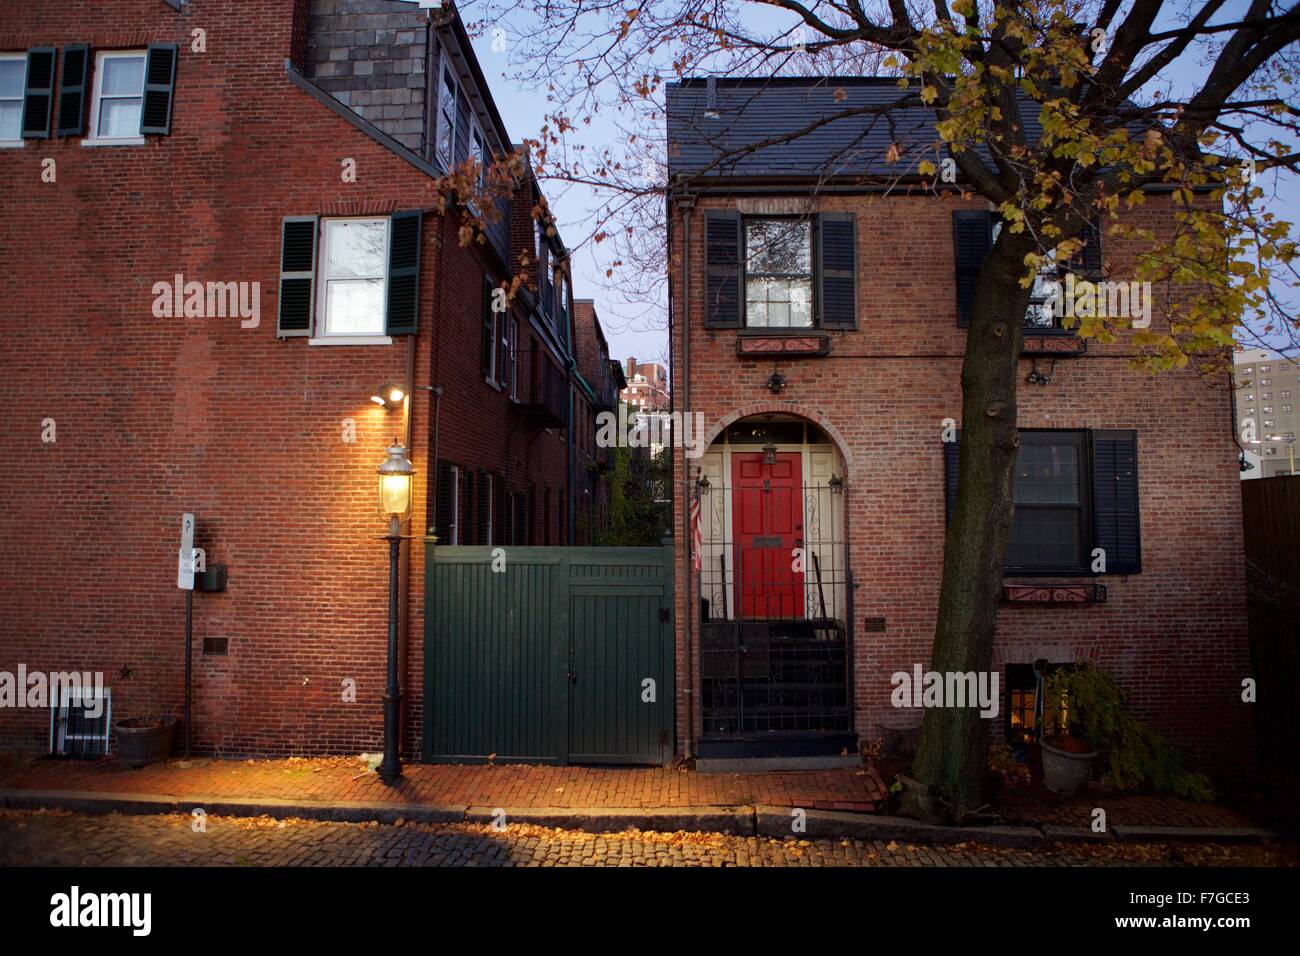 Autumn street scenes in the quaint and historic neighborhood of Bay Village, Boston, Massachusetts. Stock Photo